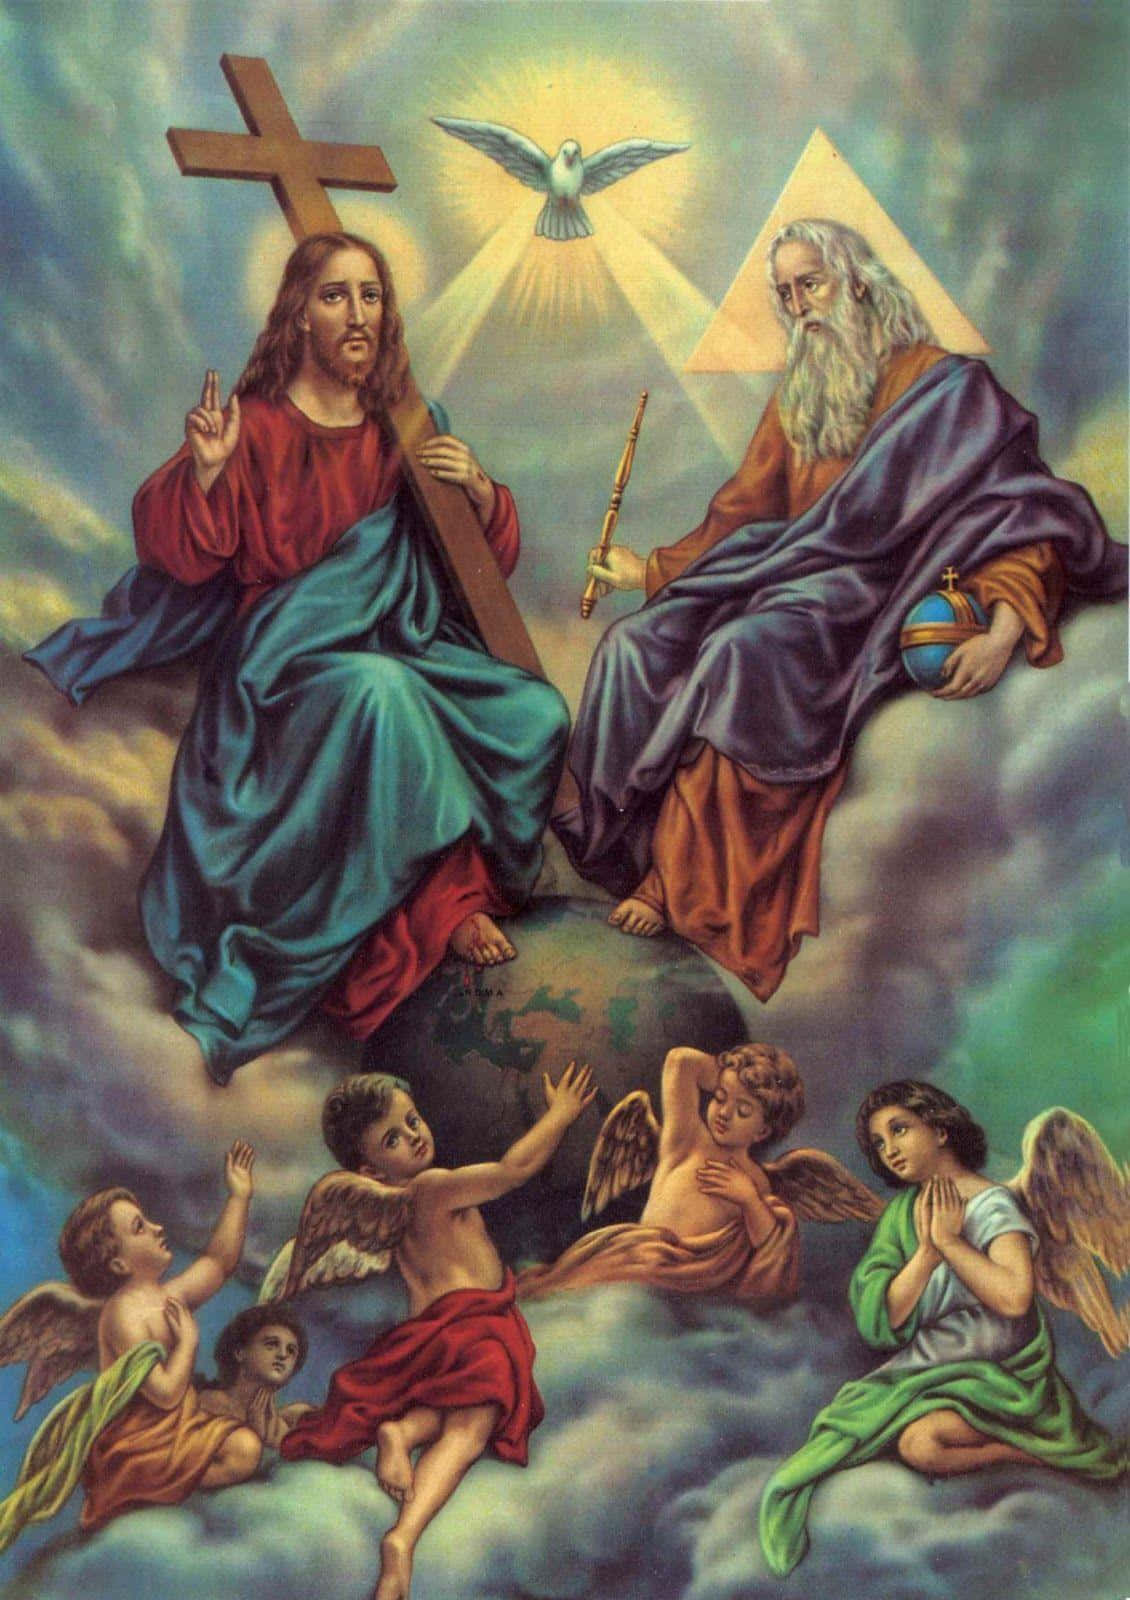 holy trinity wallpaper